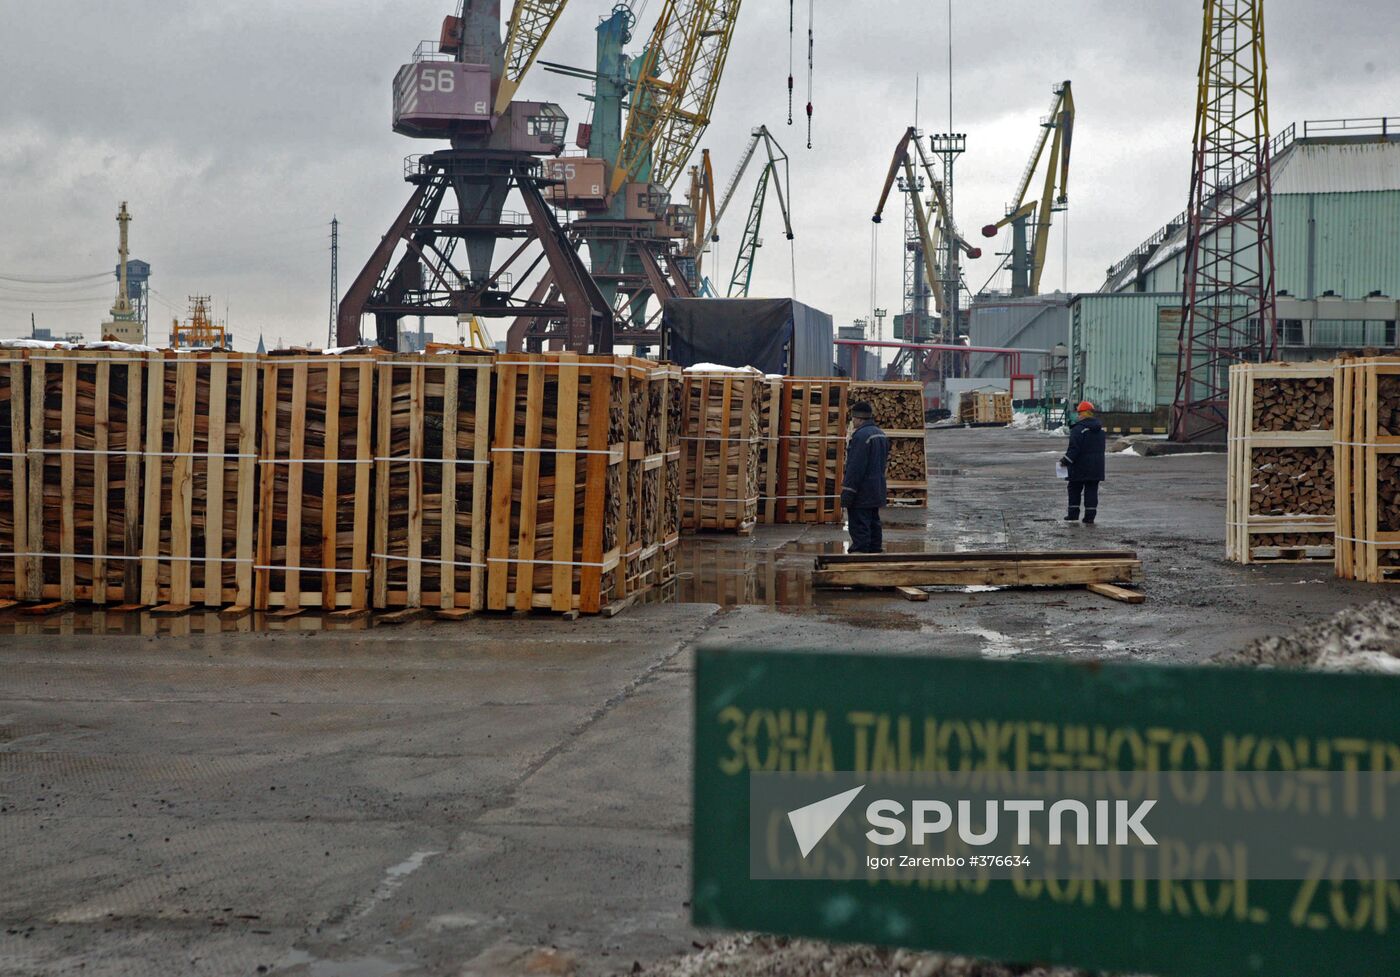 Commercial Seaport Kaliningrad border crossing point